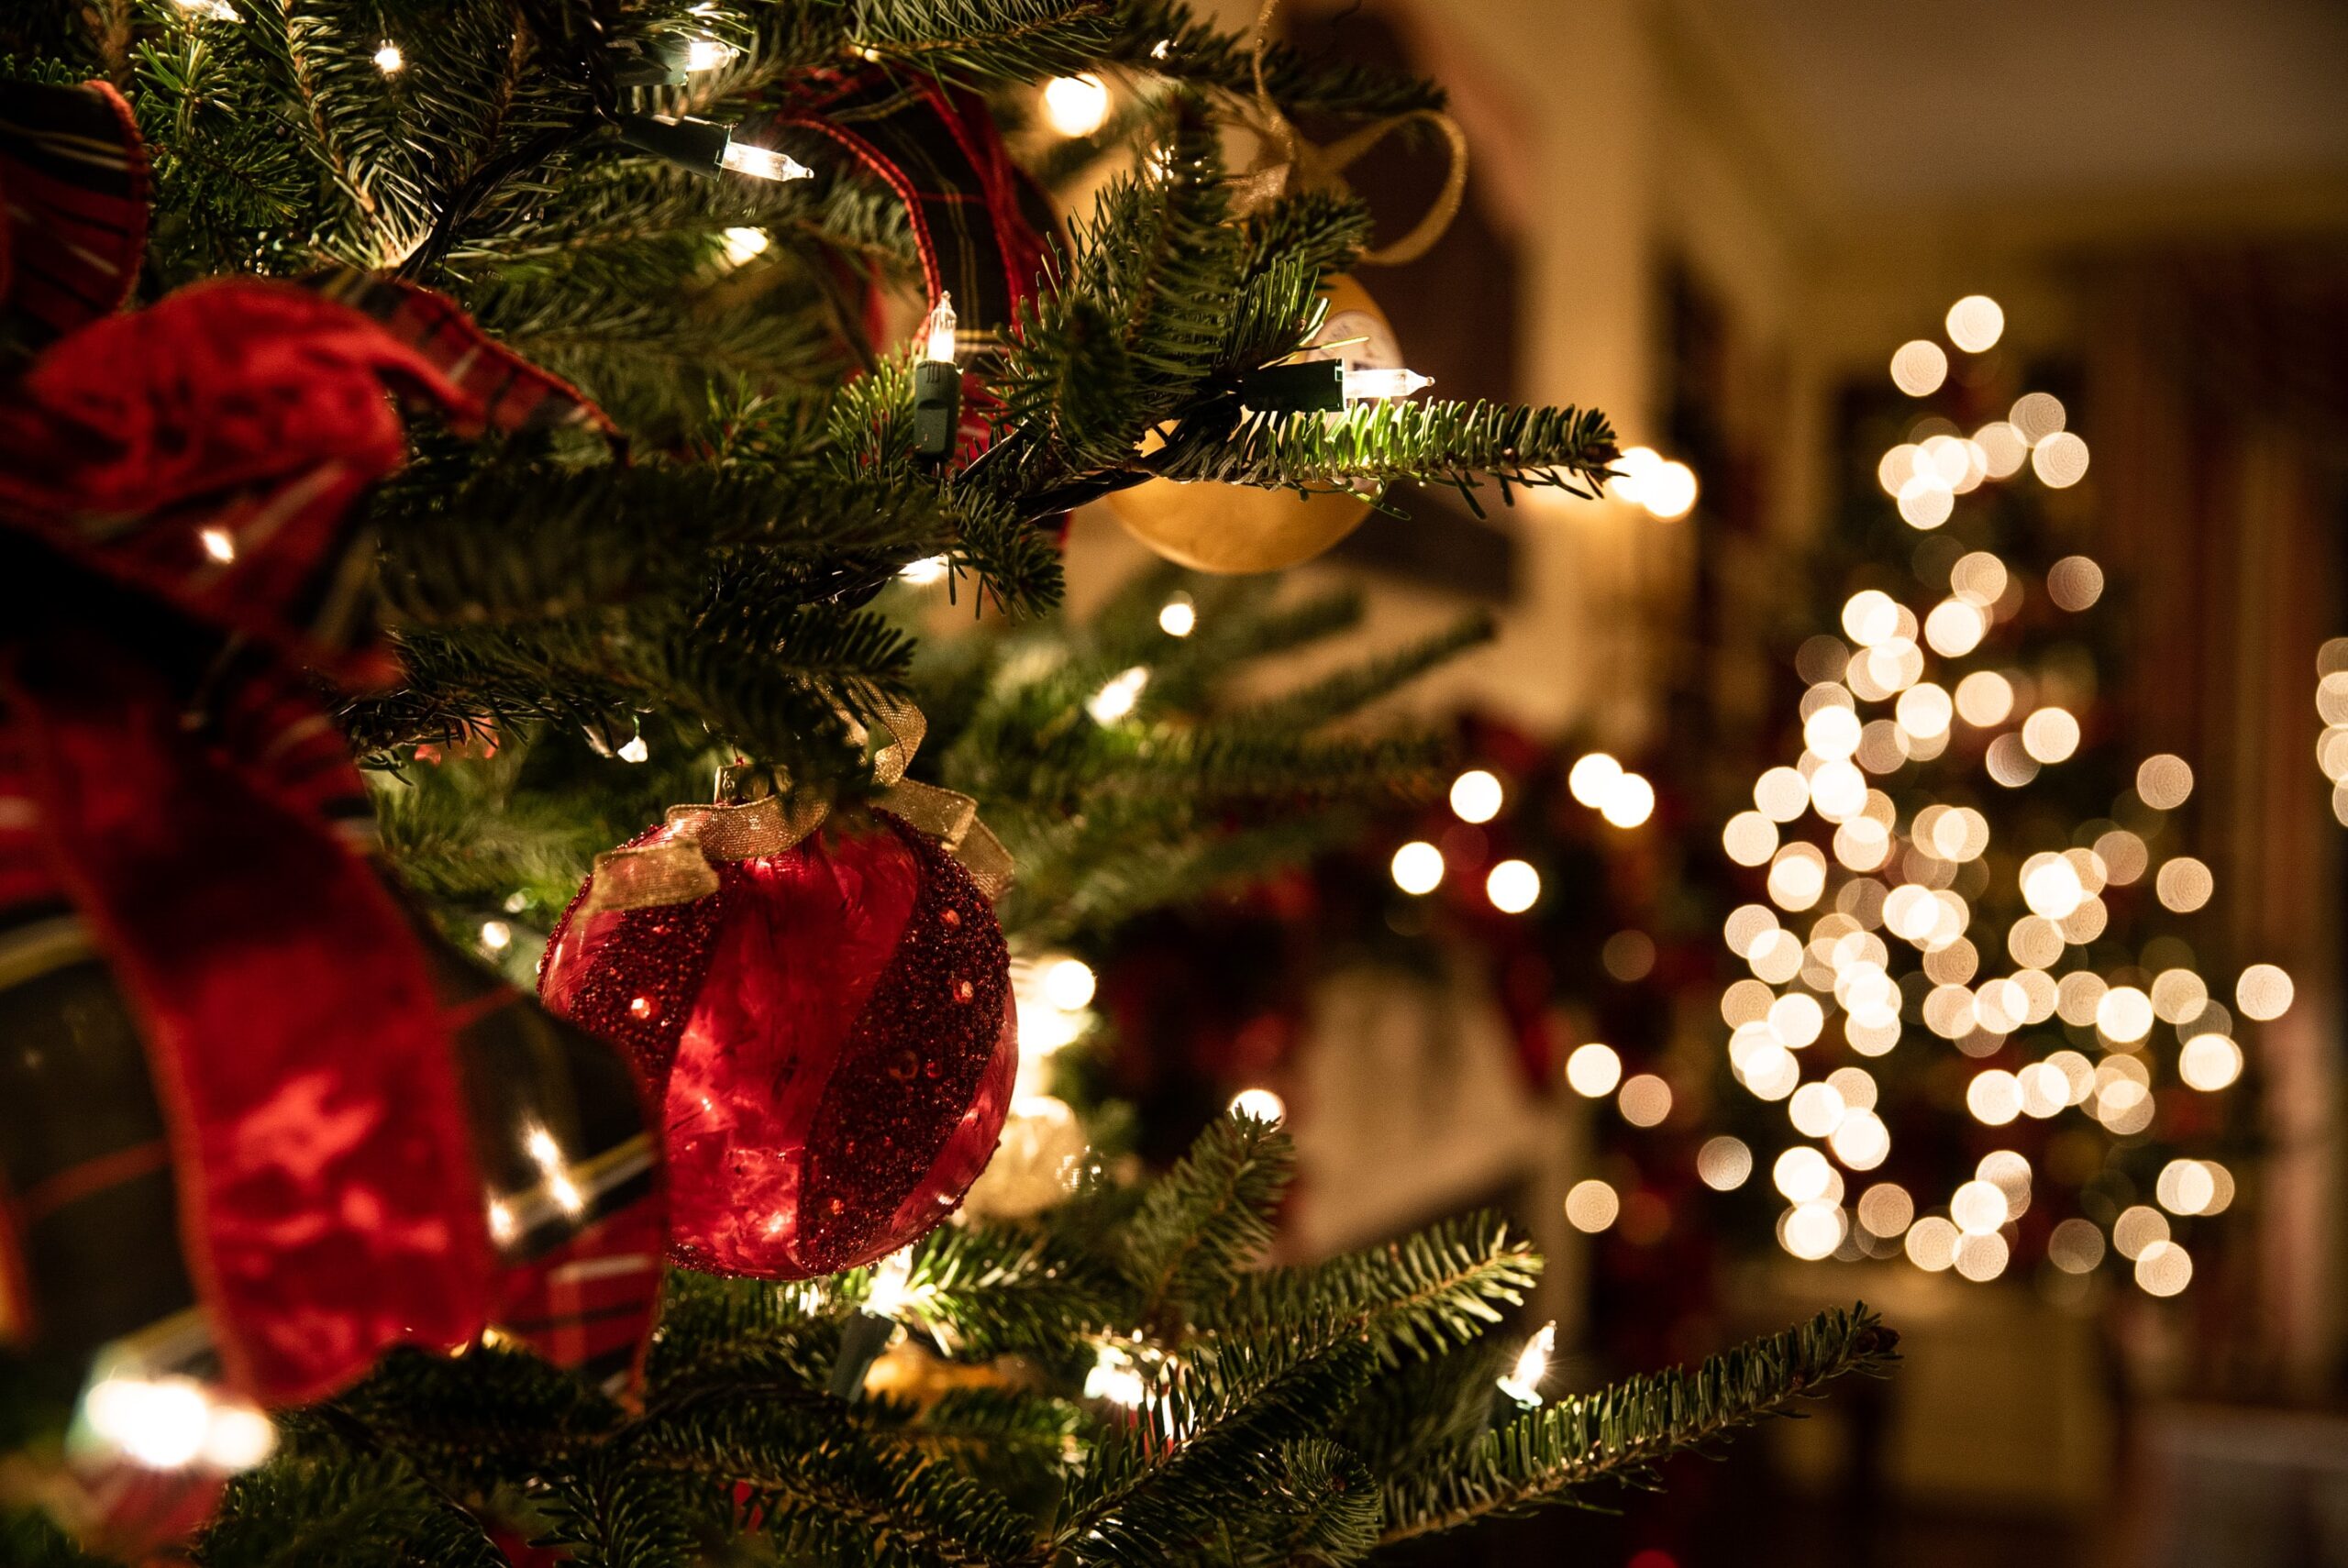 インテリア 木 枝  オブジェ ハロウィン クリスマス  電飾ツリー  期間限定特価 クリスマスツリー イルミネーションツリー  75cm 電池式 北欧  おしゃれ LED 暖か白い